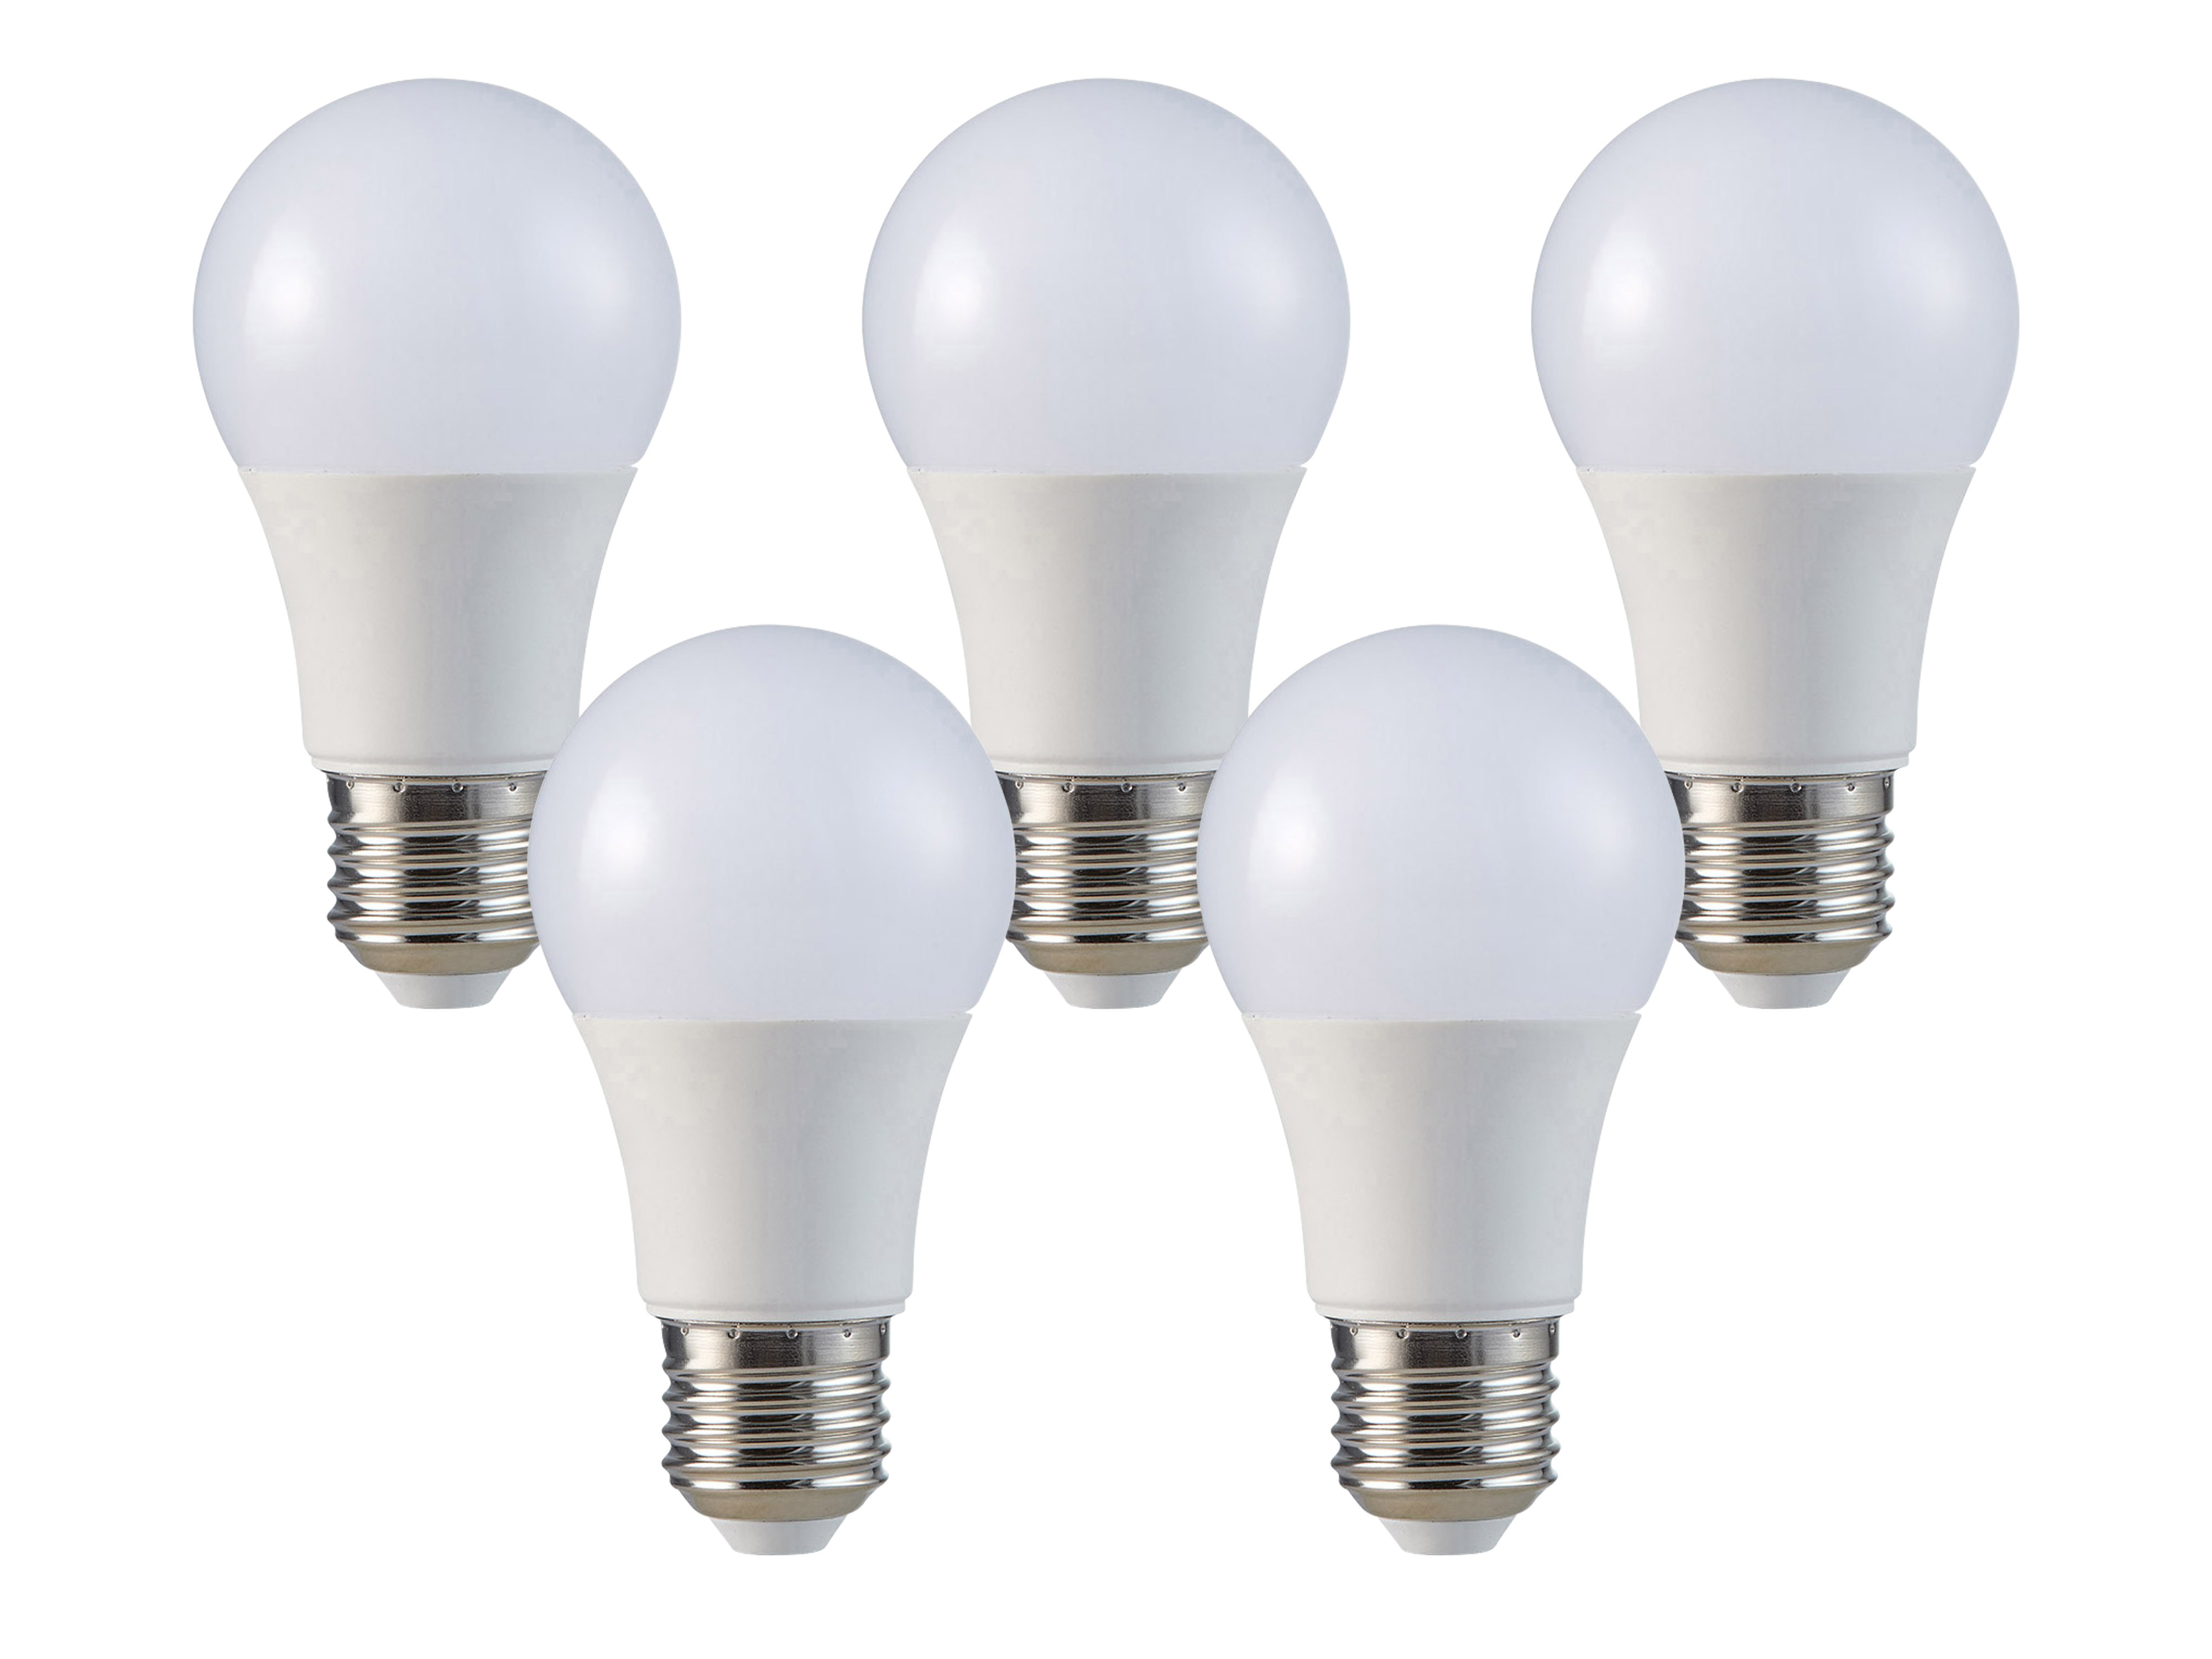 V-TAC LED-Lampe VT-2099, E27, 8,5W, 4000K, 5 Stk